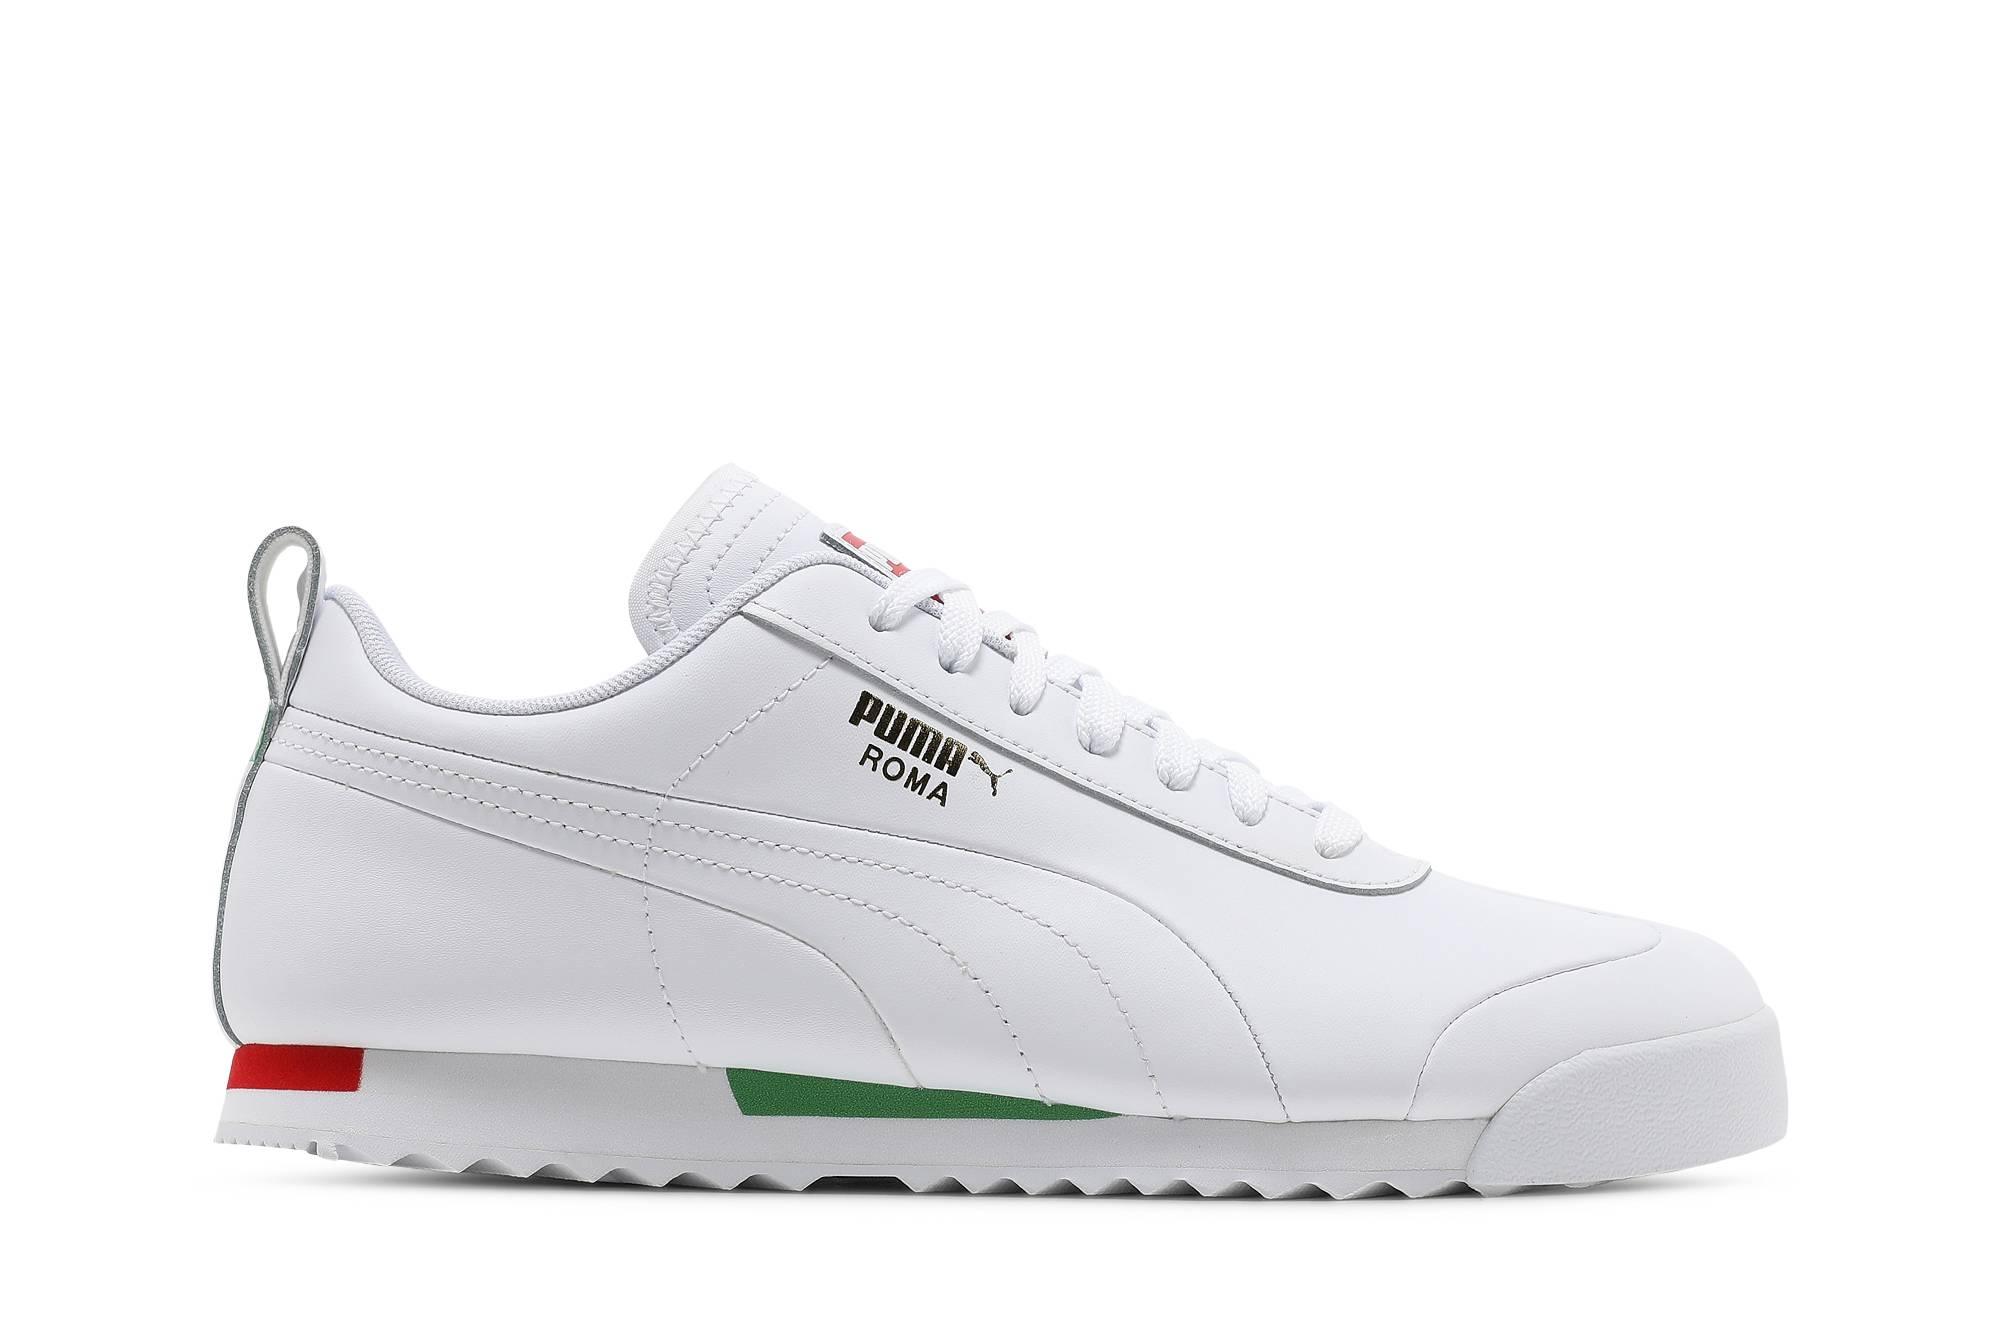 All White Puma Roma Shoes | lupon.gov.ph